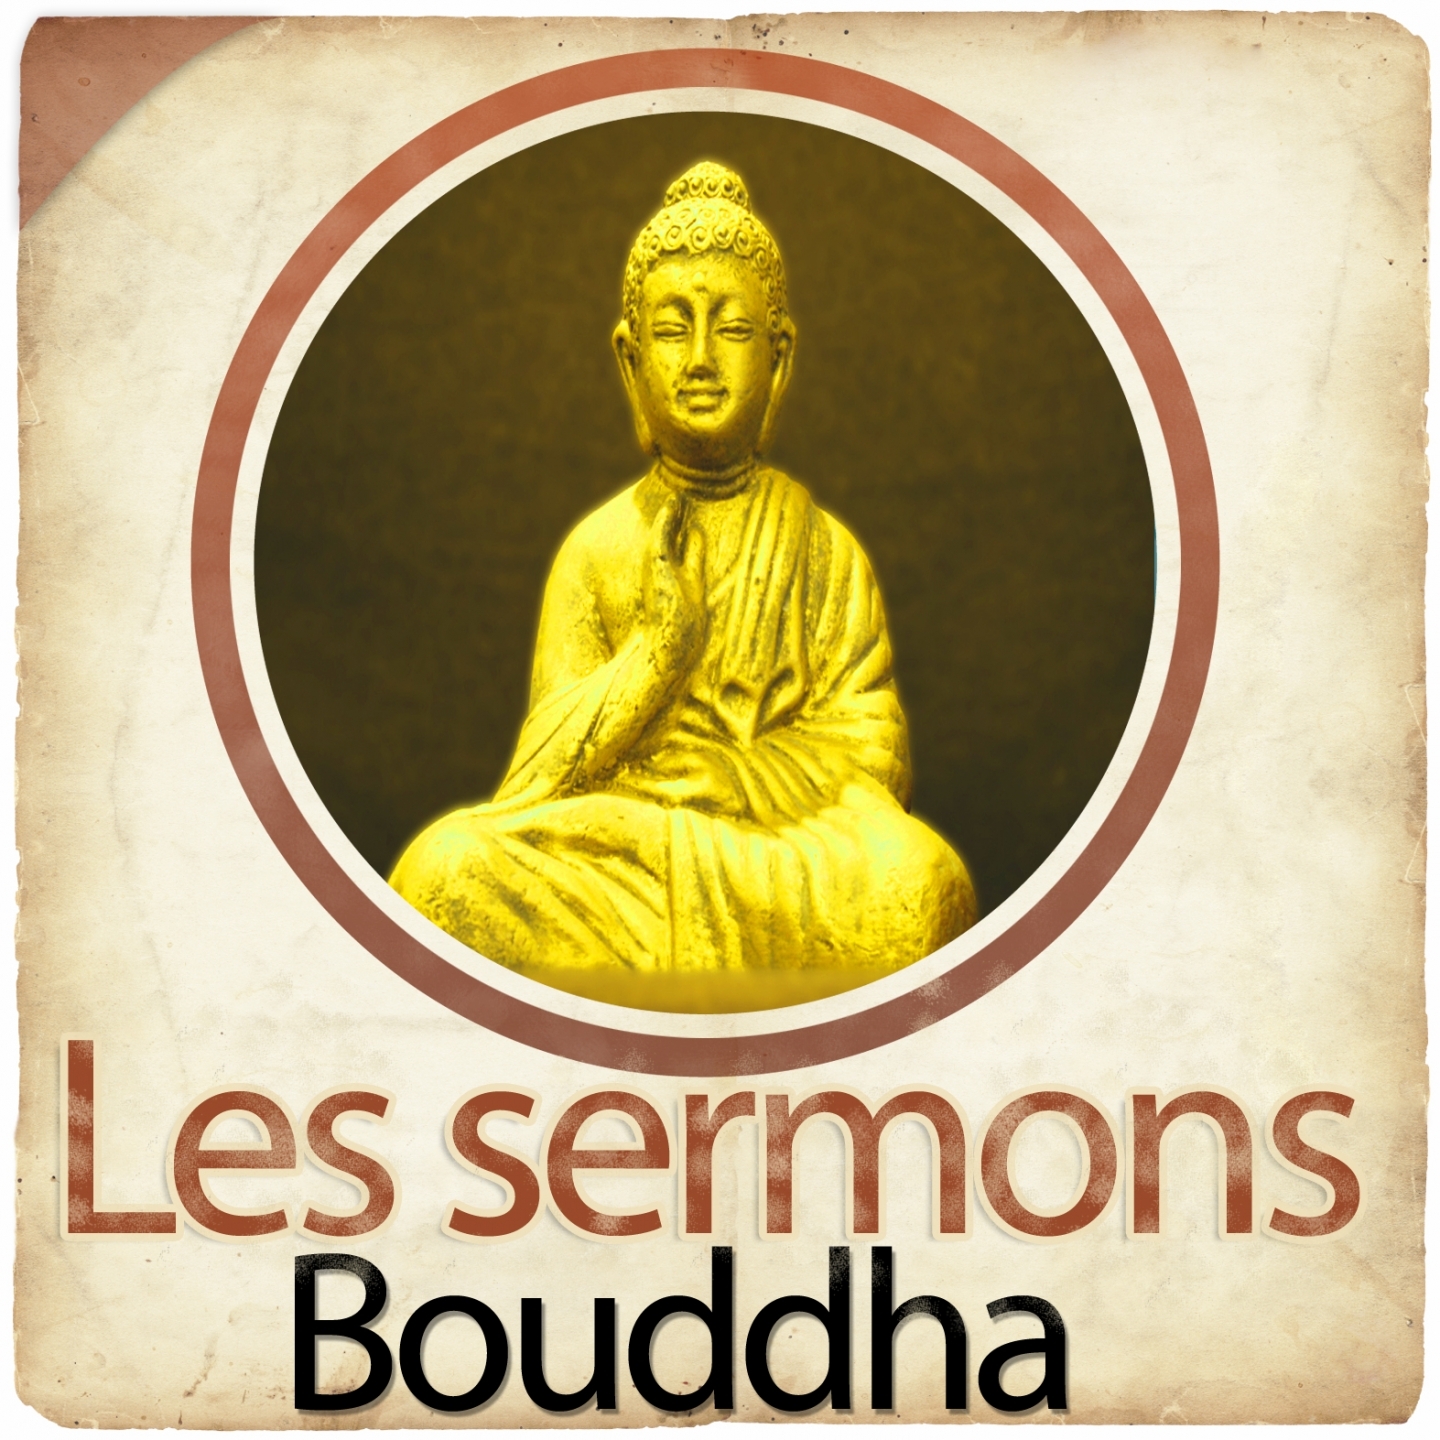 Les sermons de Bouddha, chapitre 24